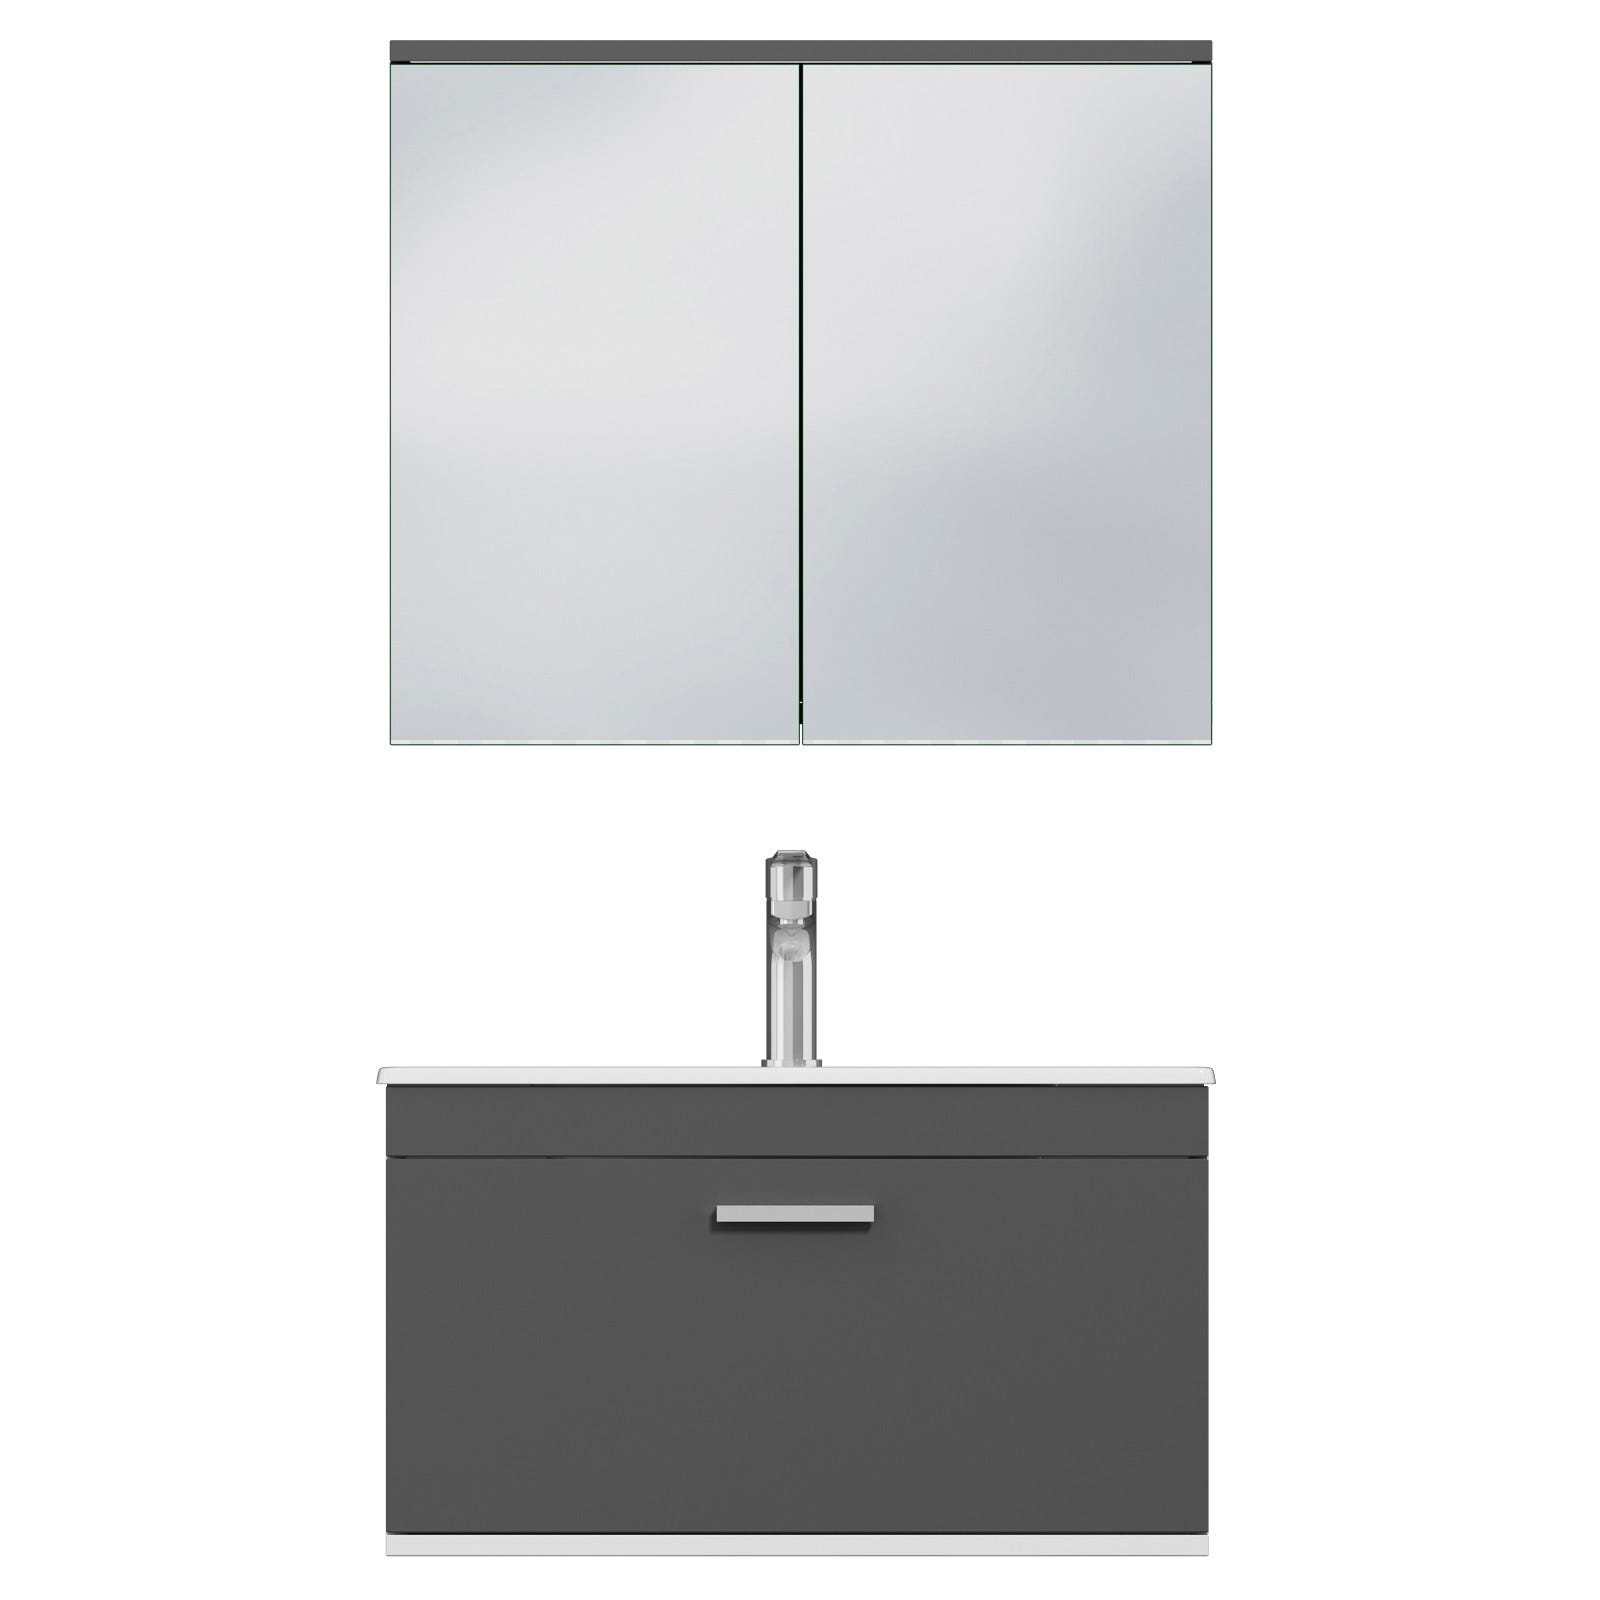 RUBITE Meuble salle de bain simple vasque 1 tiroir gris anthracite largeur 70 cm + miroir armoire 4